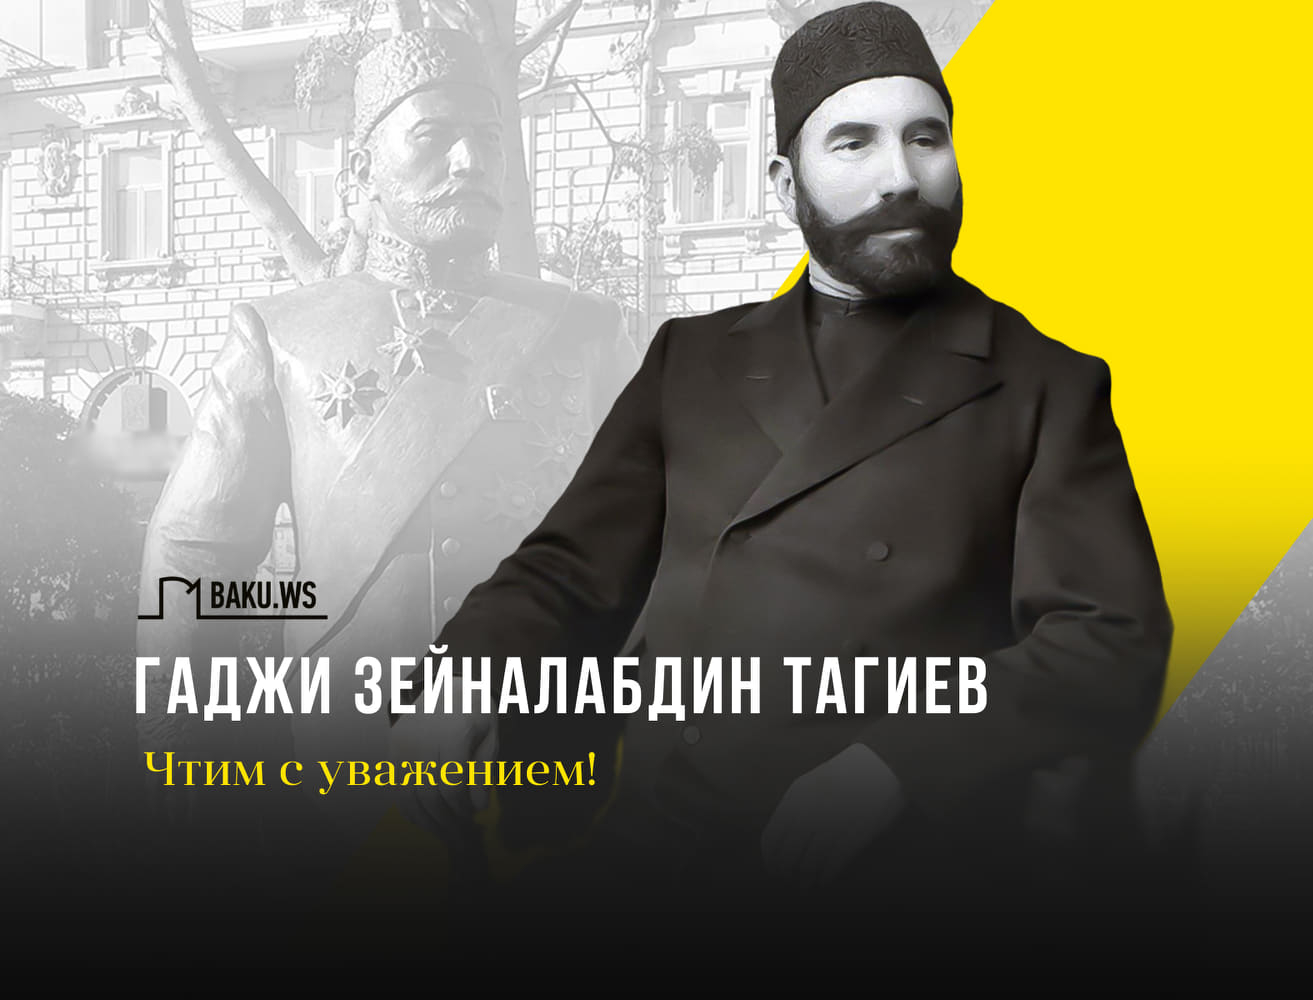 Сегодня день рождения Гаджи Зейналабдина Тагиева